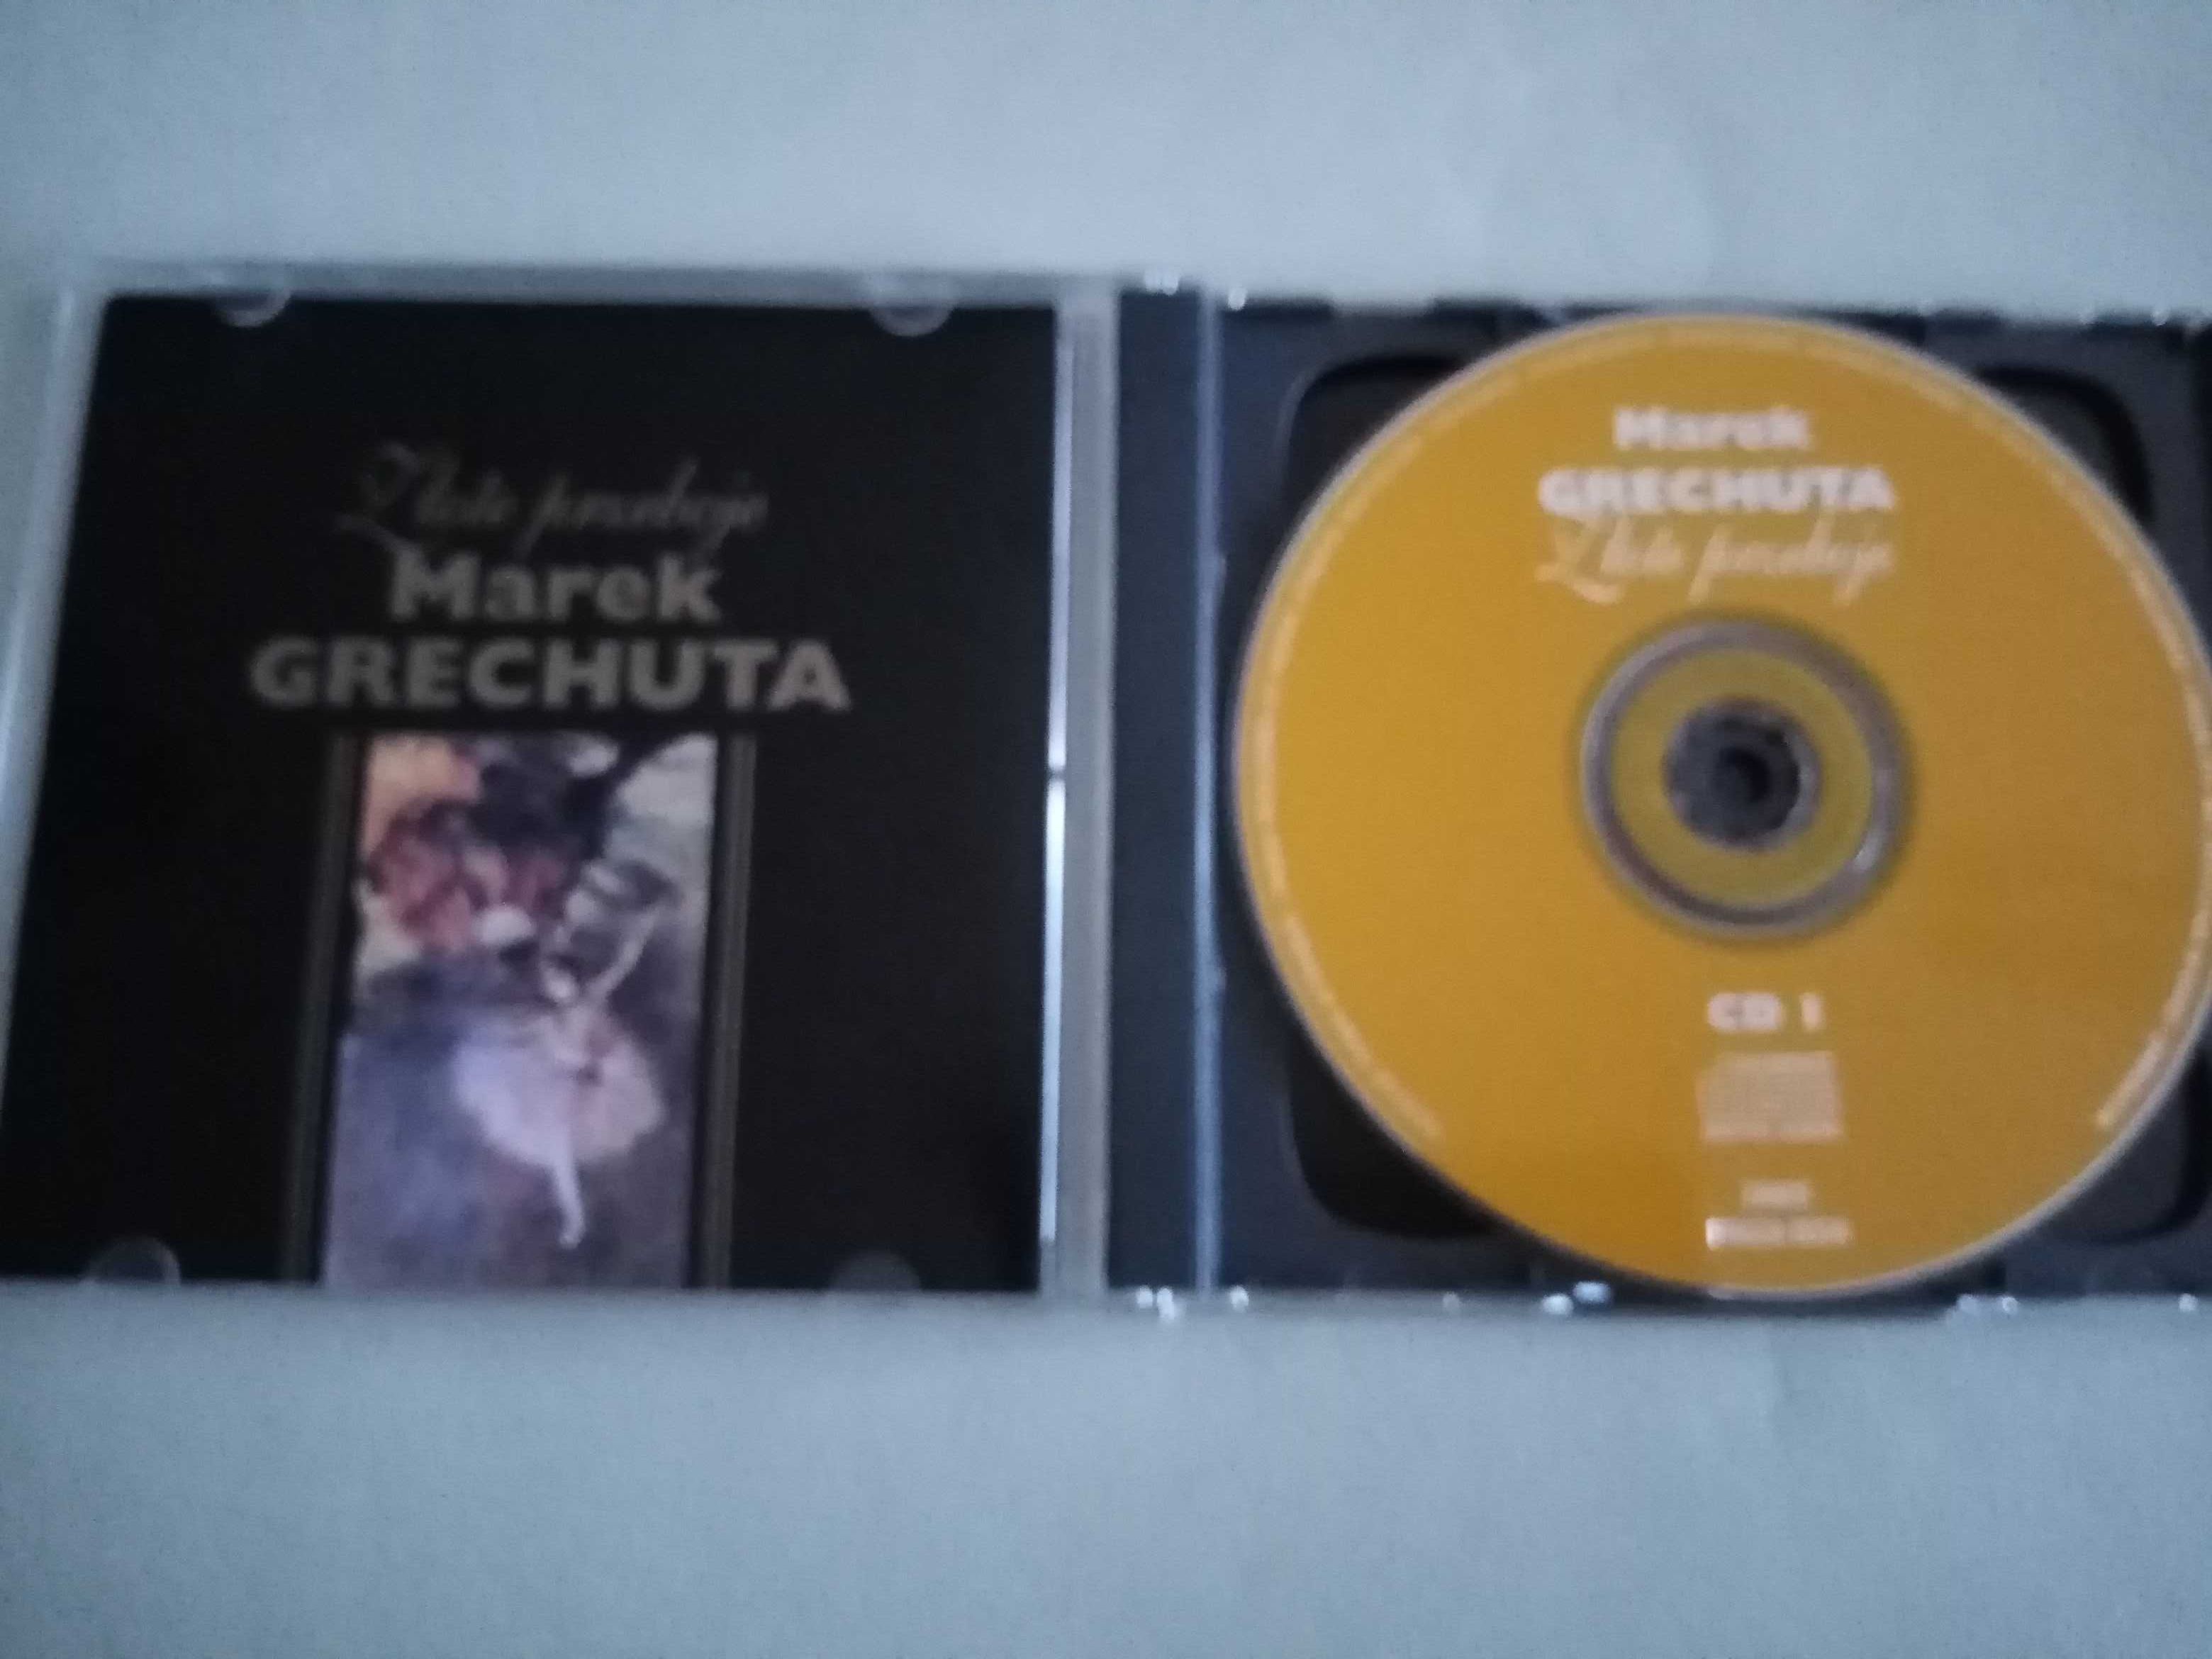 2 CD - Marek Grechuta - Złote Przeboje - Edycja Limitowana. TANIEJ!